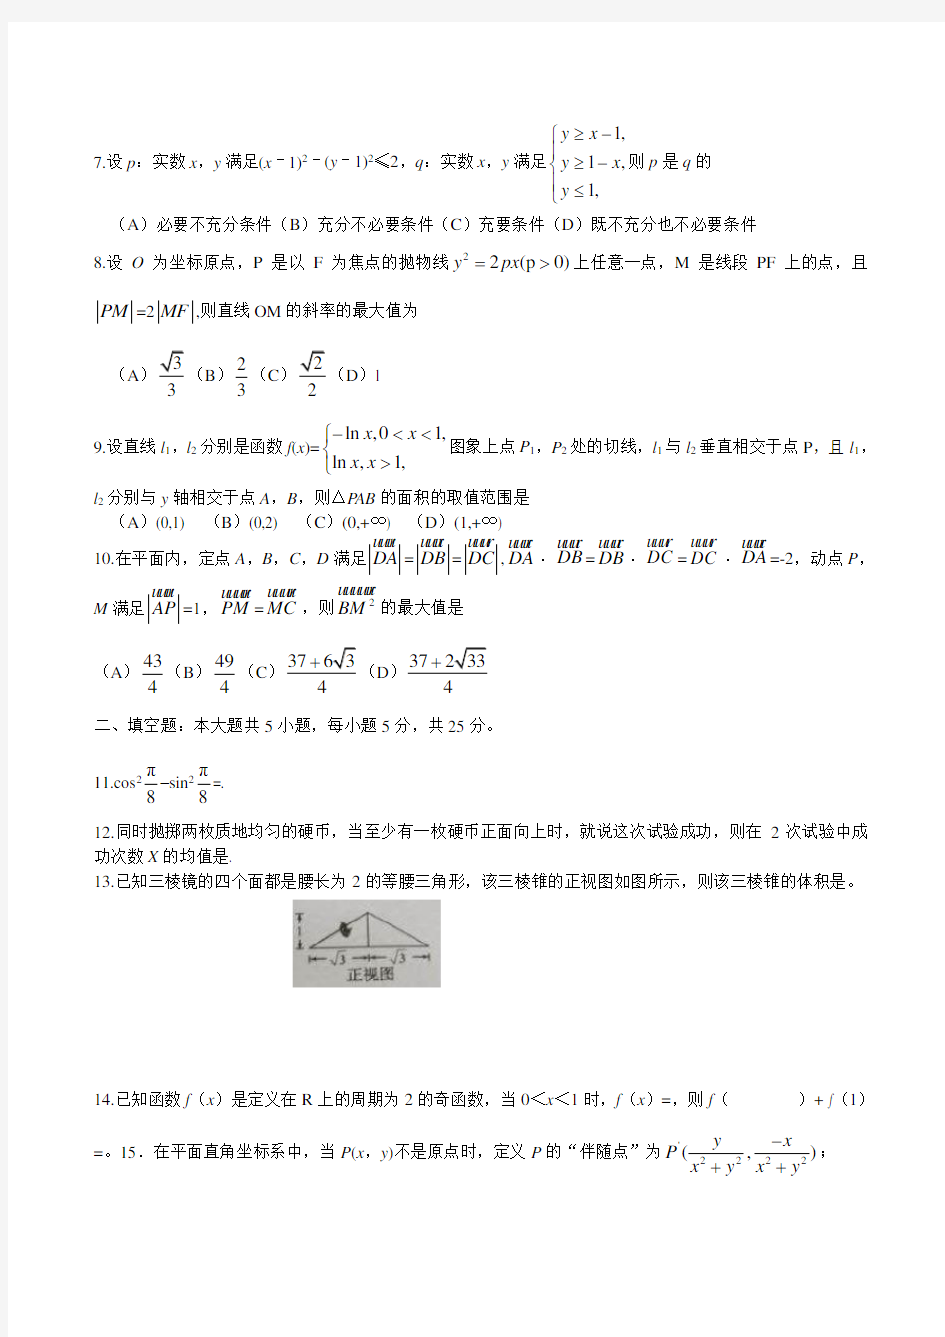 2016年四川省高考理科数学试题及答案